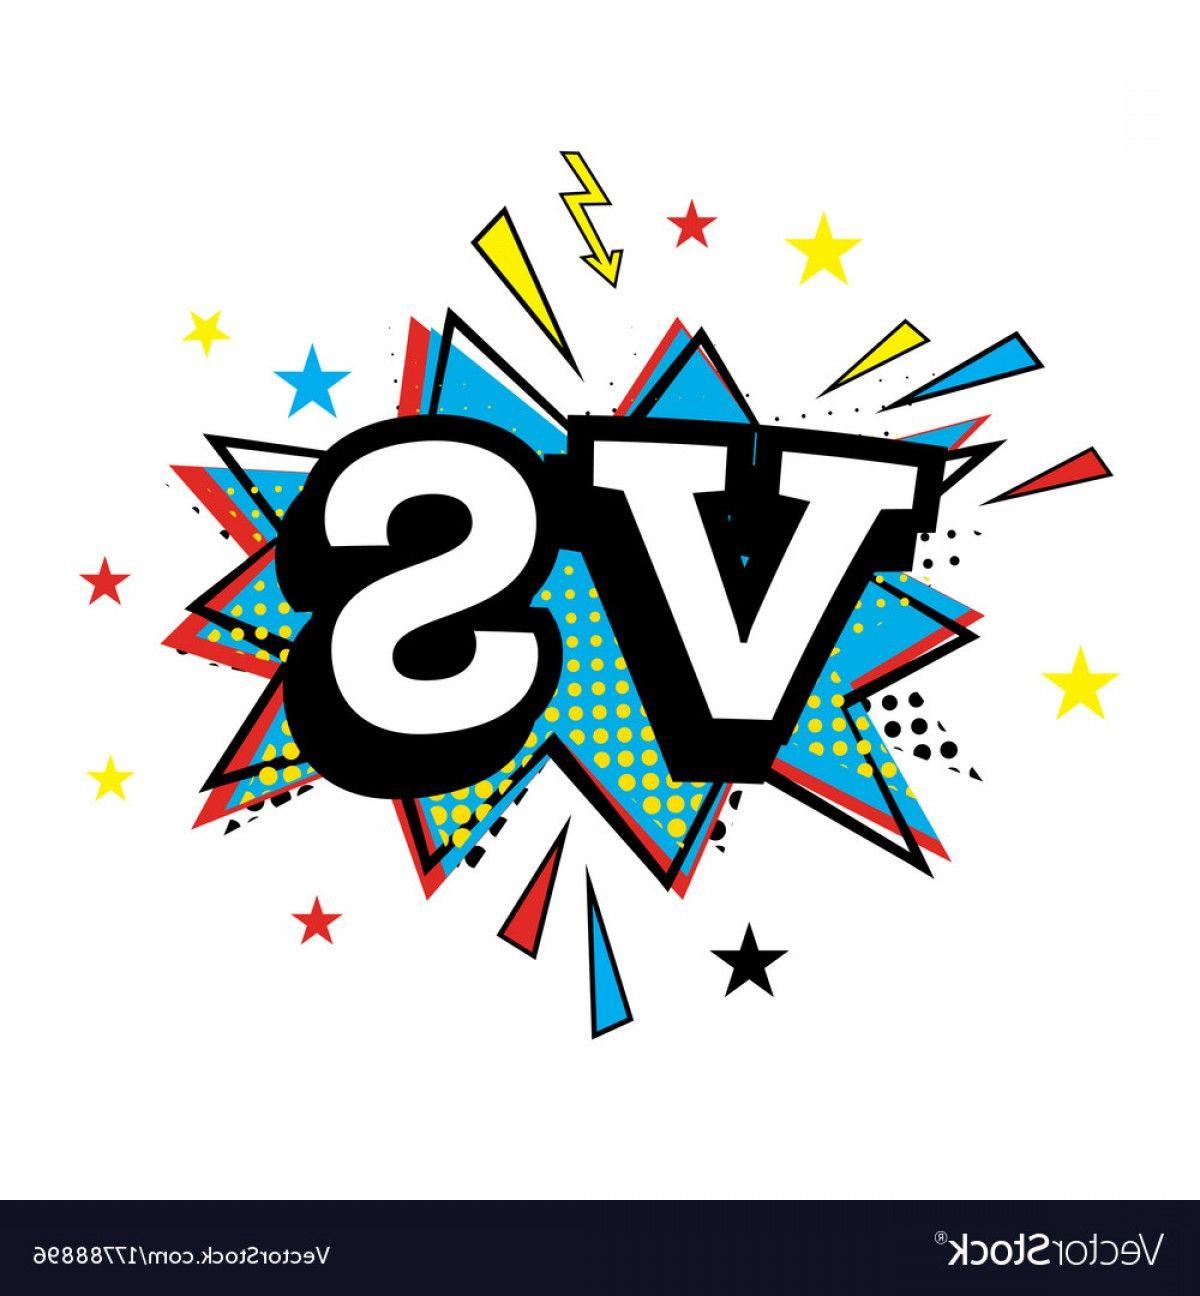 Versus Logo - Versus Letters Or Vs Logo Comic Text In Pop Art Vector